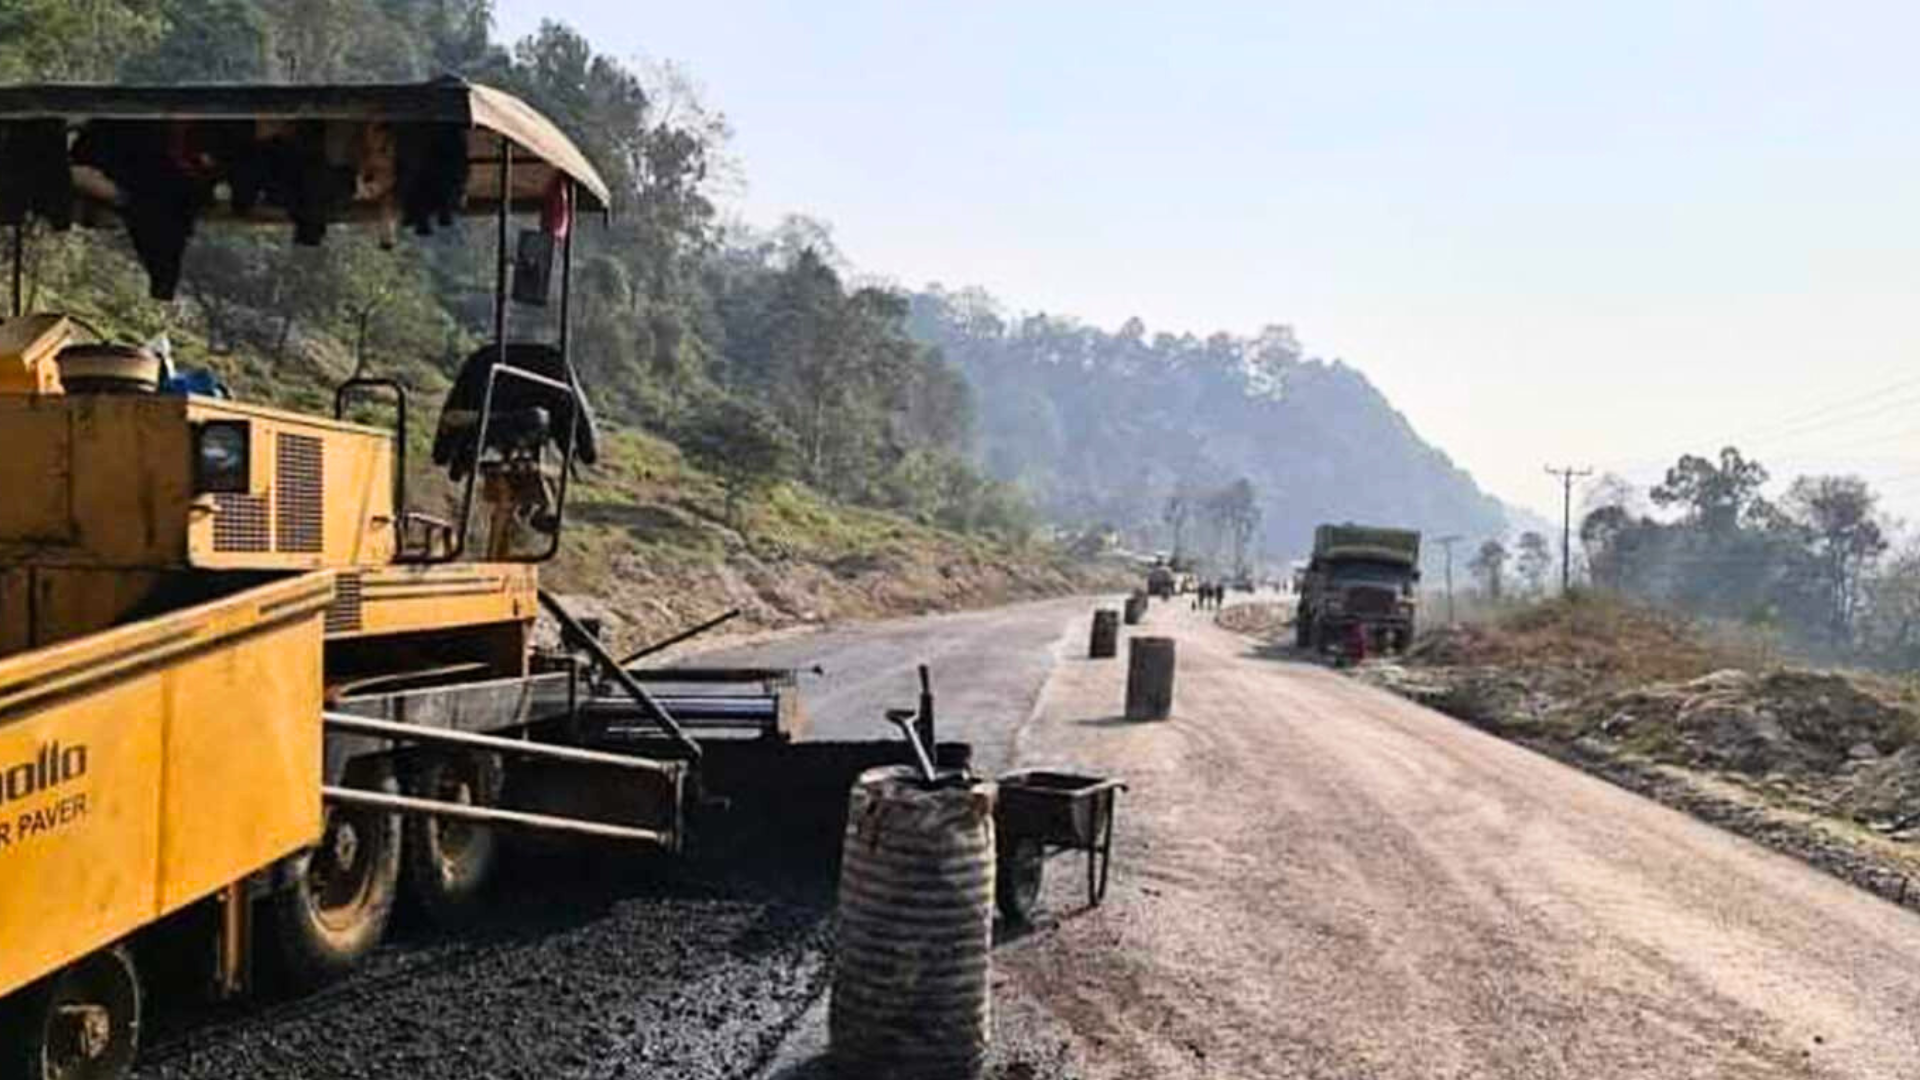 गल्छी–रसुवागढी राजमार्गकाे तिरतिरेमा हुनसक्ने अवरोध खुलाउन उपकरण र जनशक्ति तयार